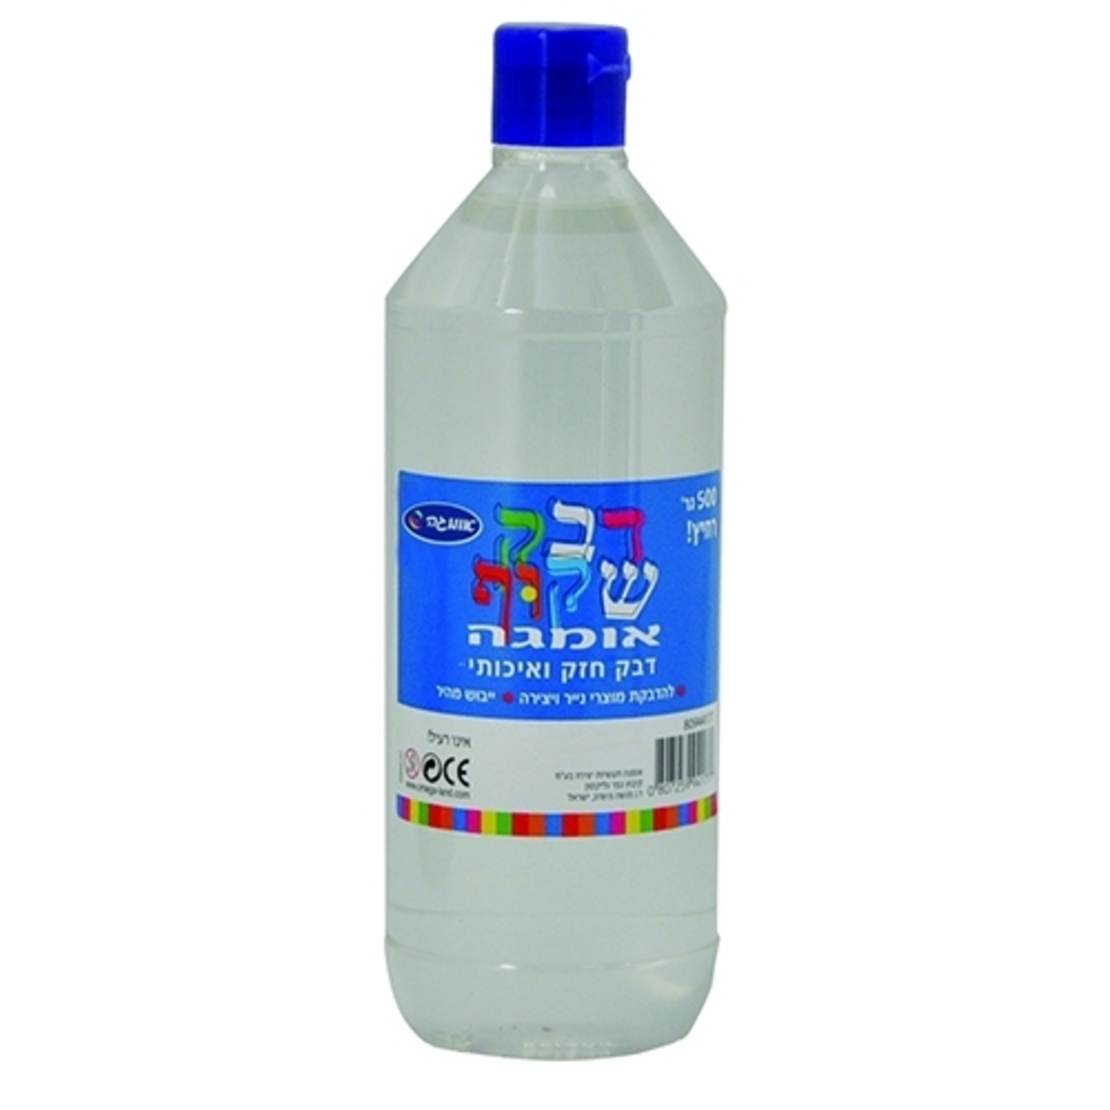 דבק פלסטיק 500 גרם CHA/ARI/OM